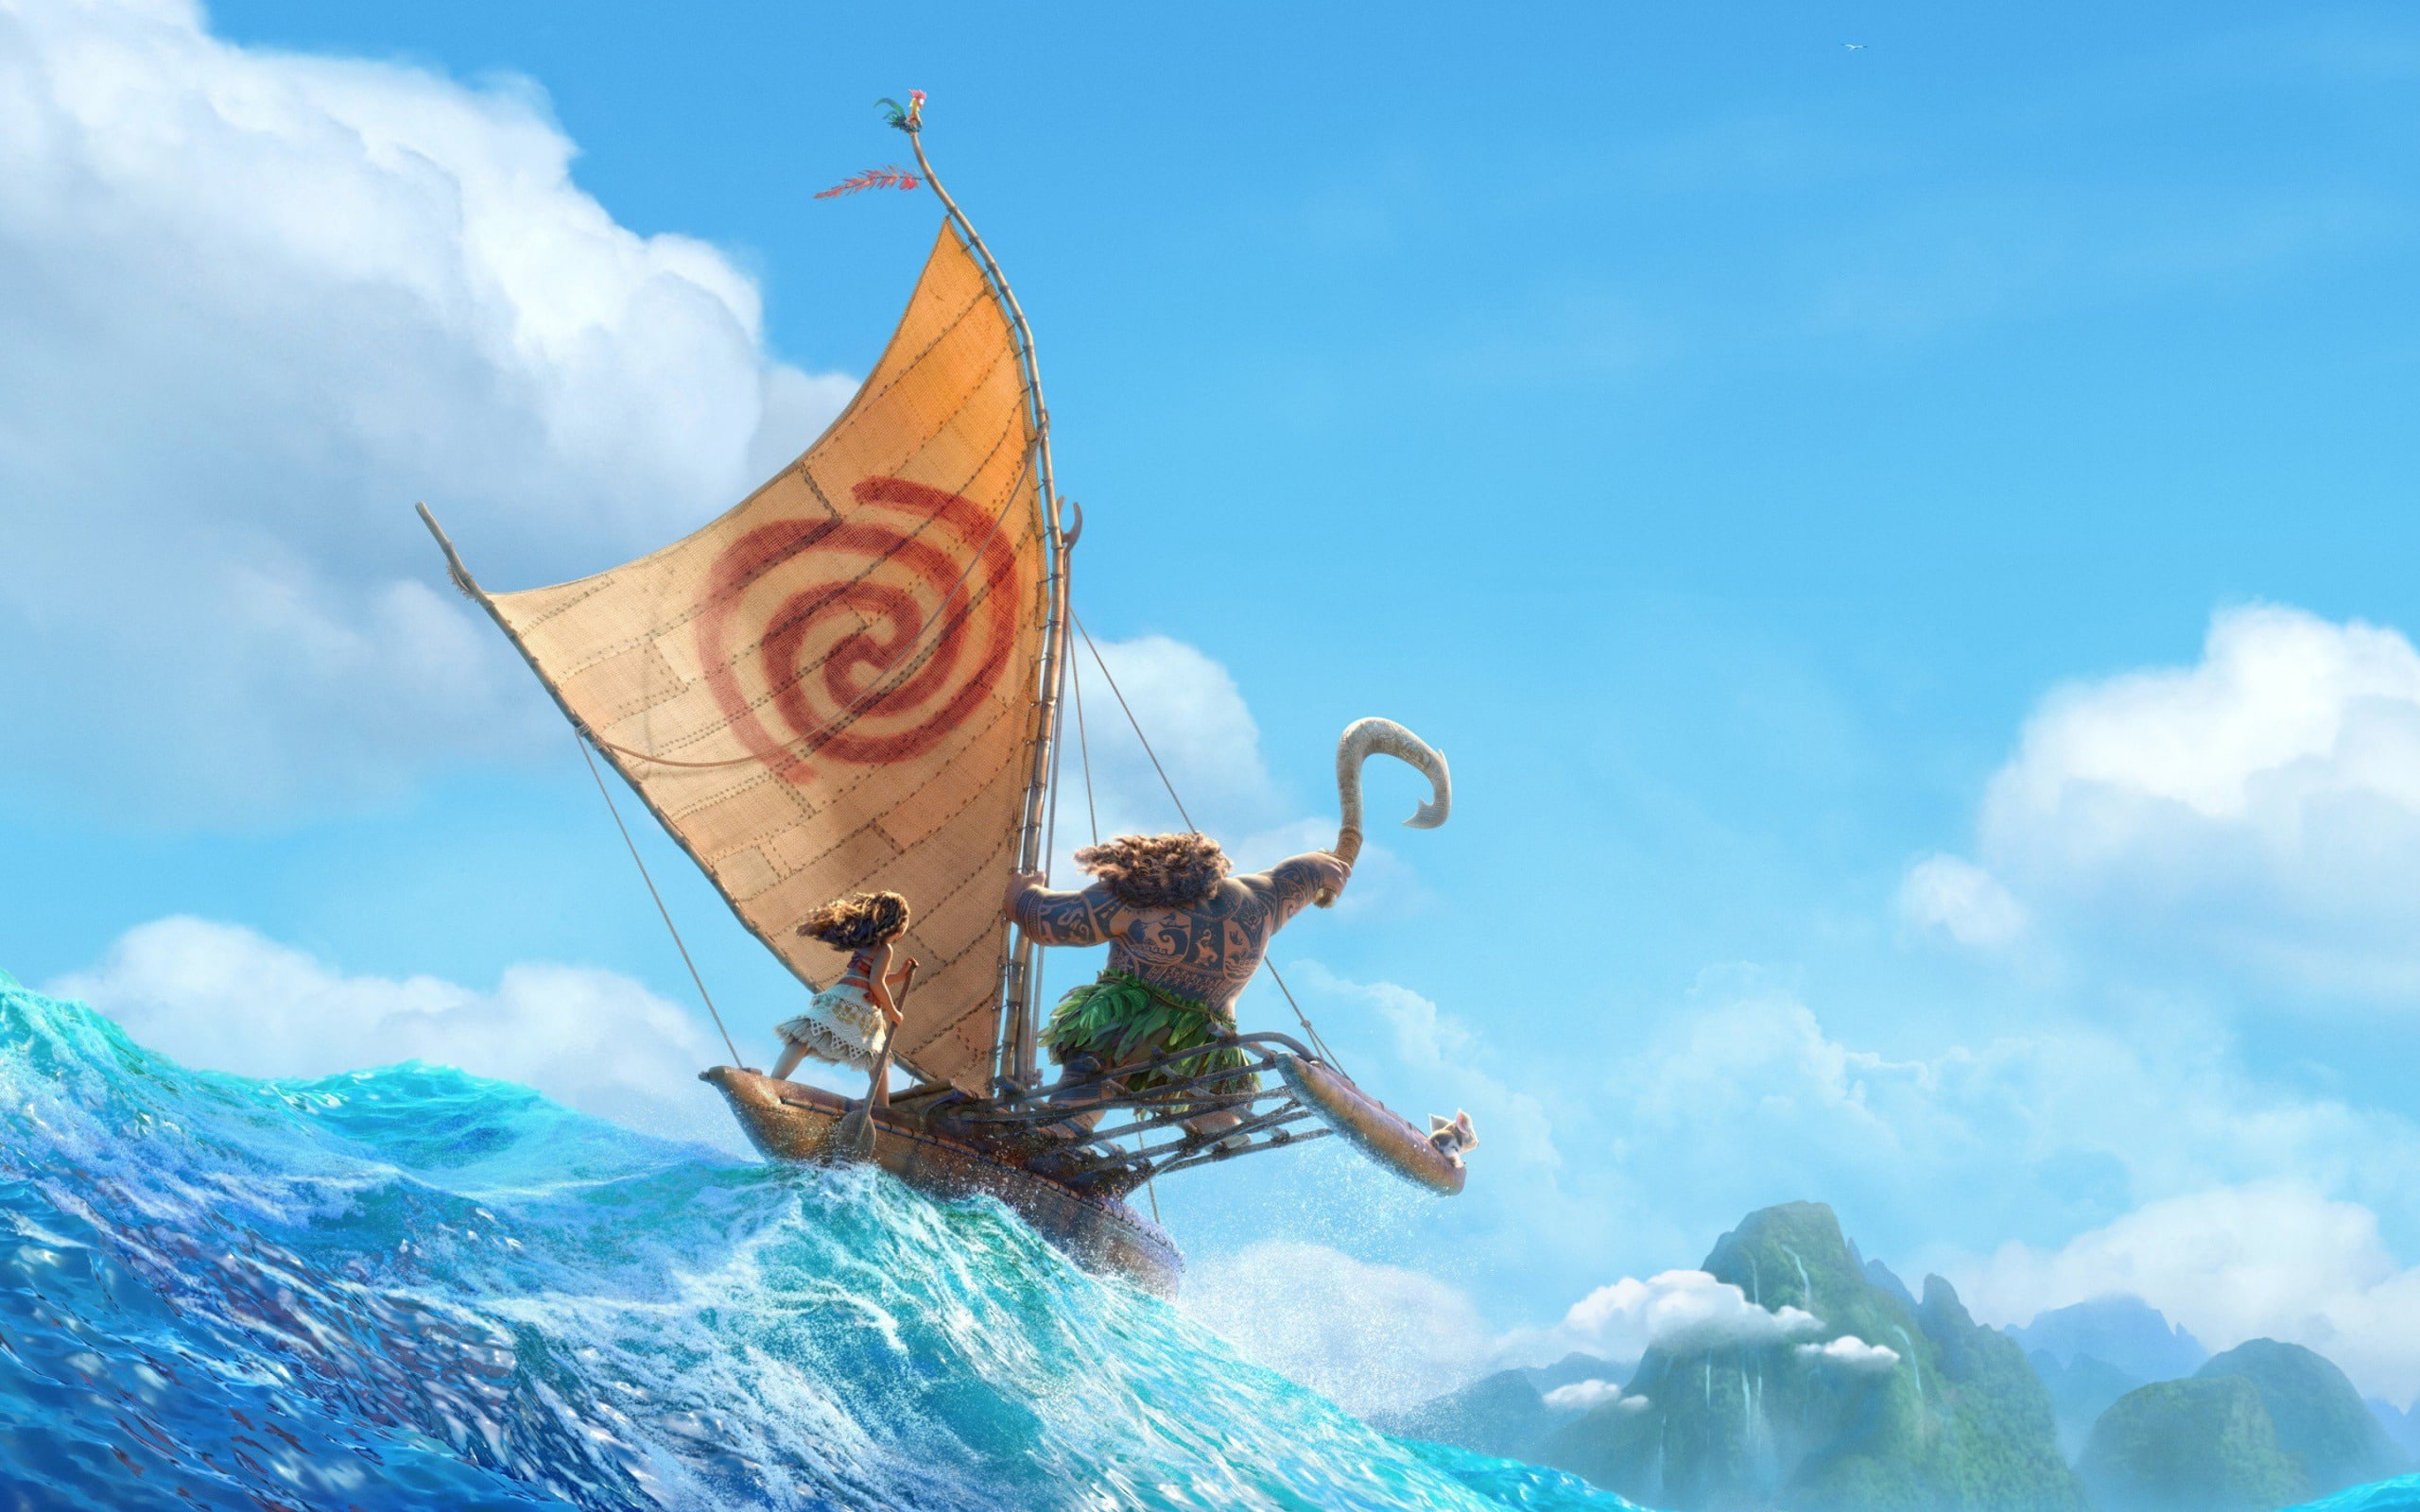 Disney moana 2016 animation-Movies Posters HD Wall.., Maui from Disney Moana illustration